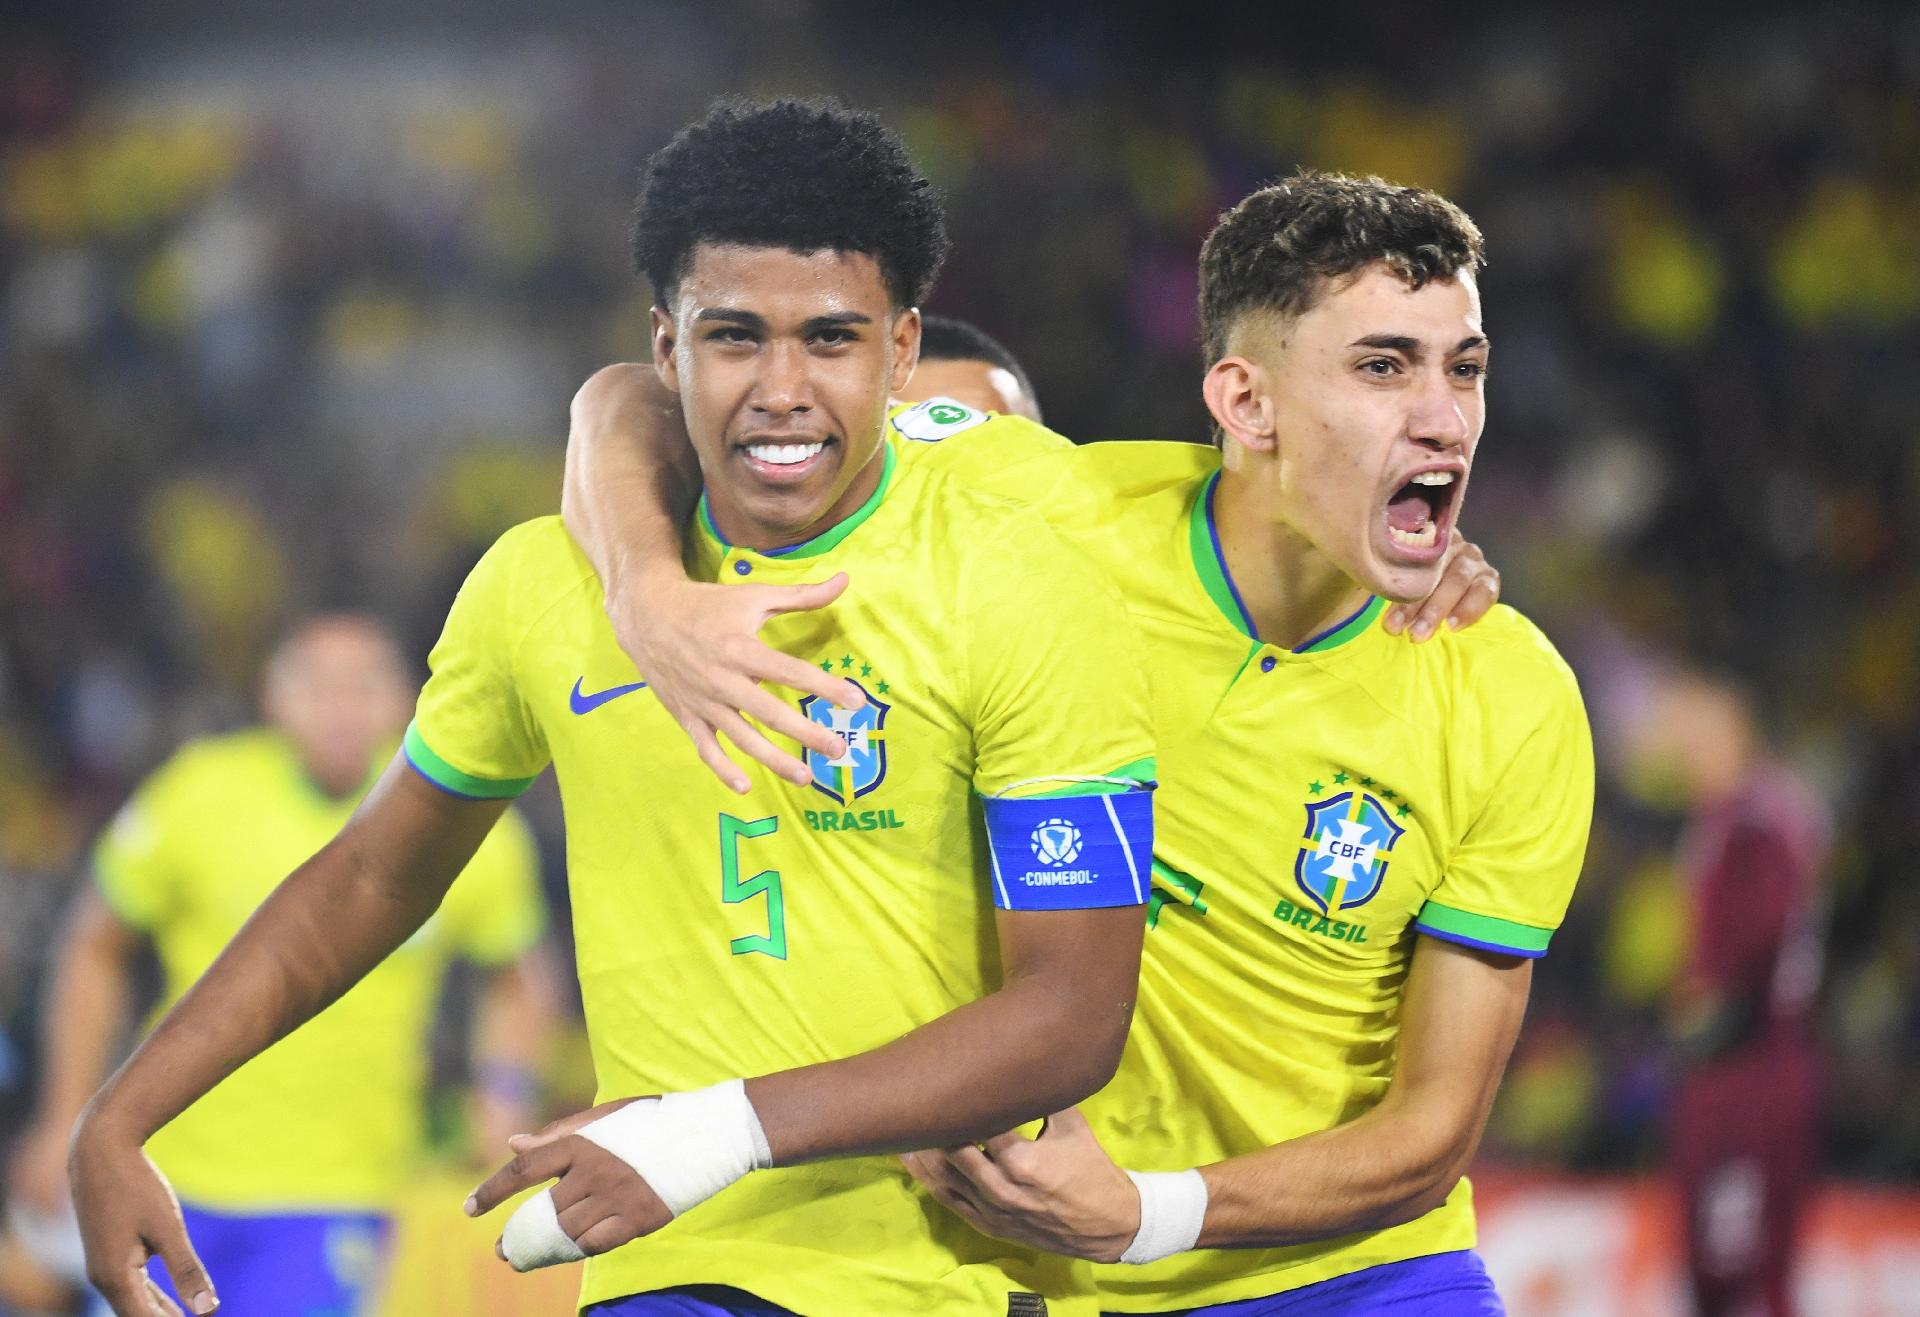 Mundial sub-20: todos os campeões e histórico completo do Brasil no torneio